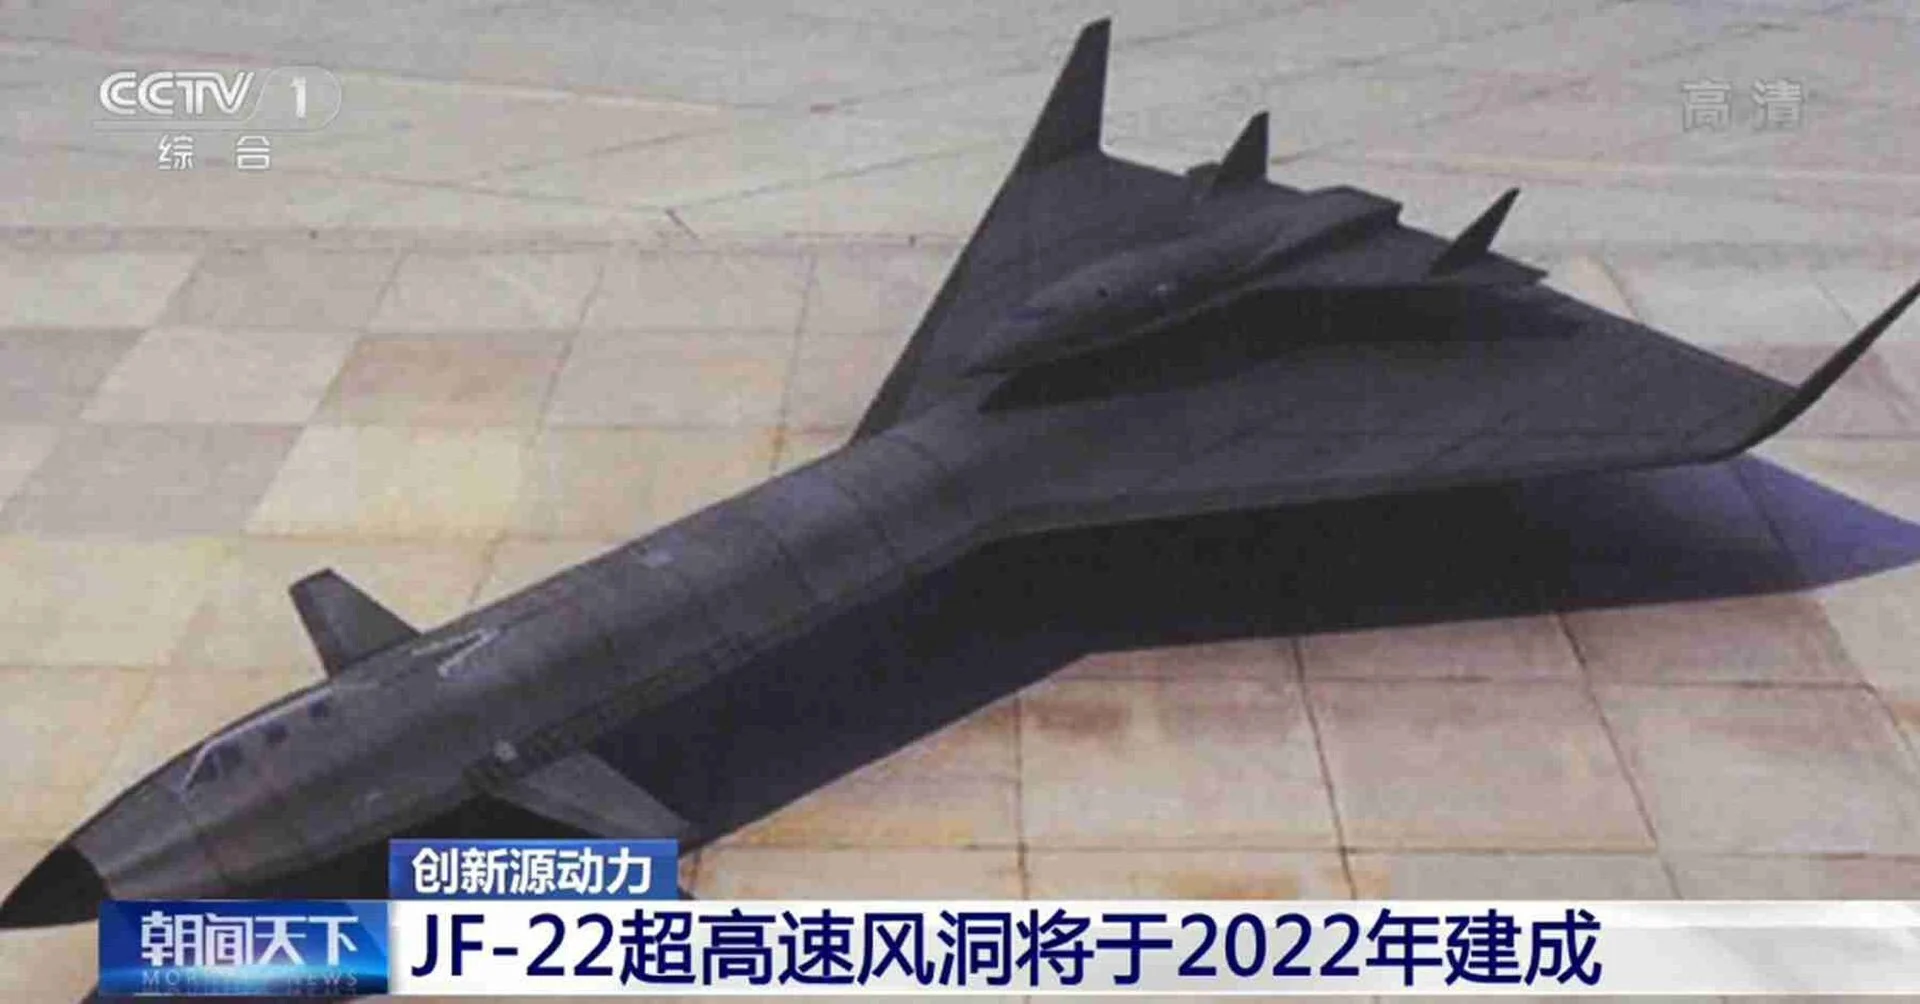 چین در حال توسعه یک موتور موشک مافوق صوت هسته ای با برد 6,000 مایل (9,600 کیلومتر) است که ظاهراً از یک طرح رها شده ناسا الهام گرفته شده است.